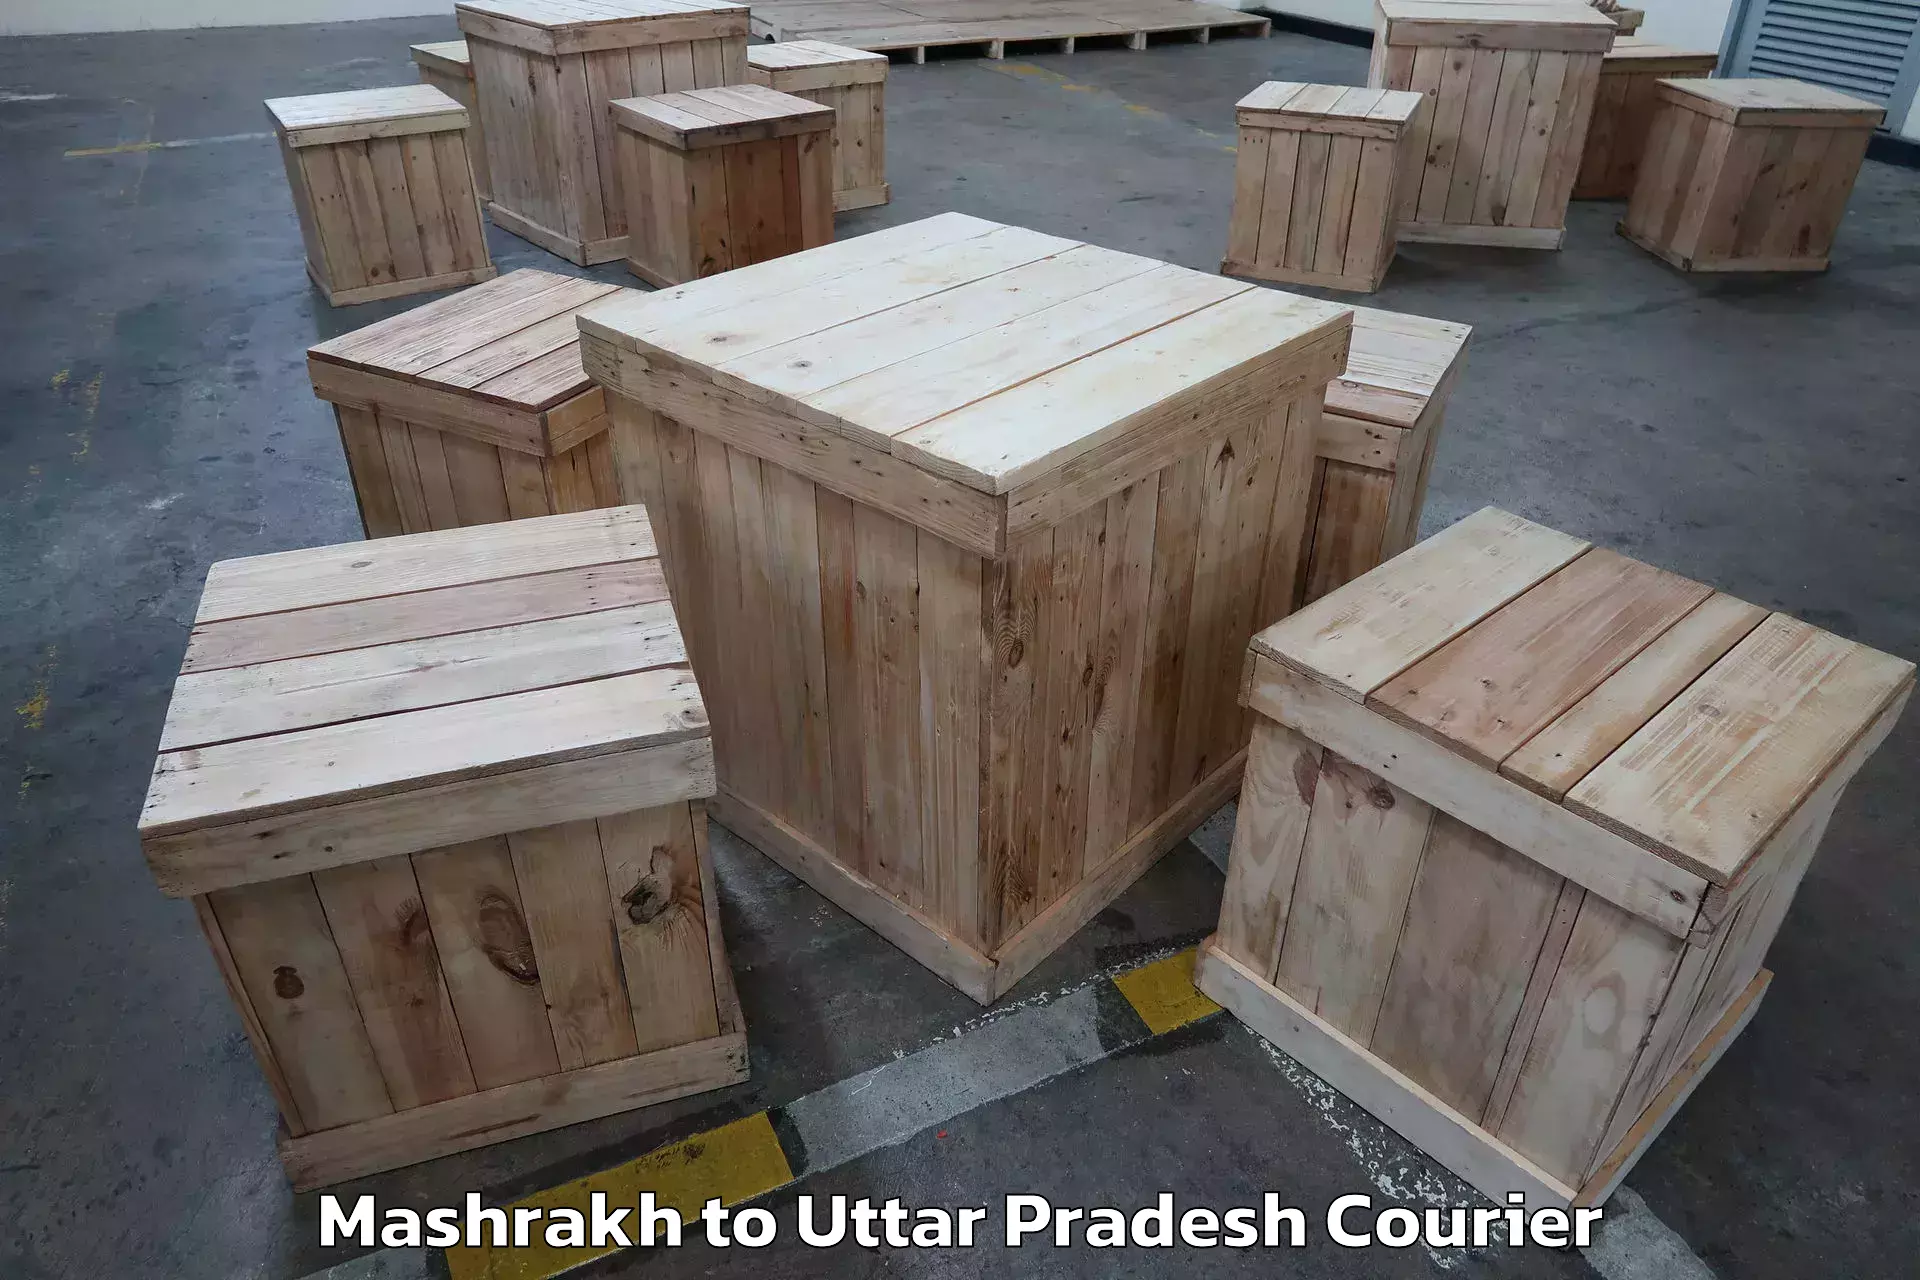 Expert goods movers in Mashrakh to Aligarh Muslim University